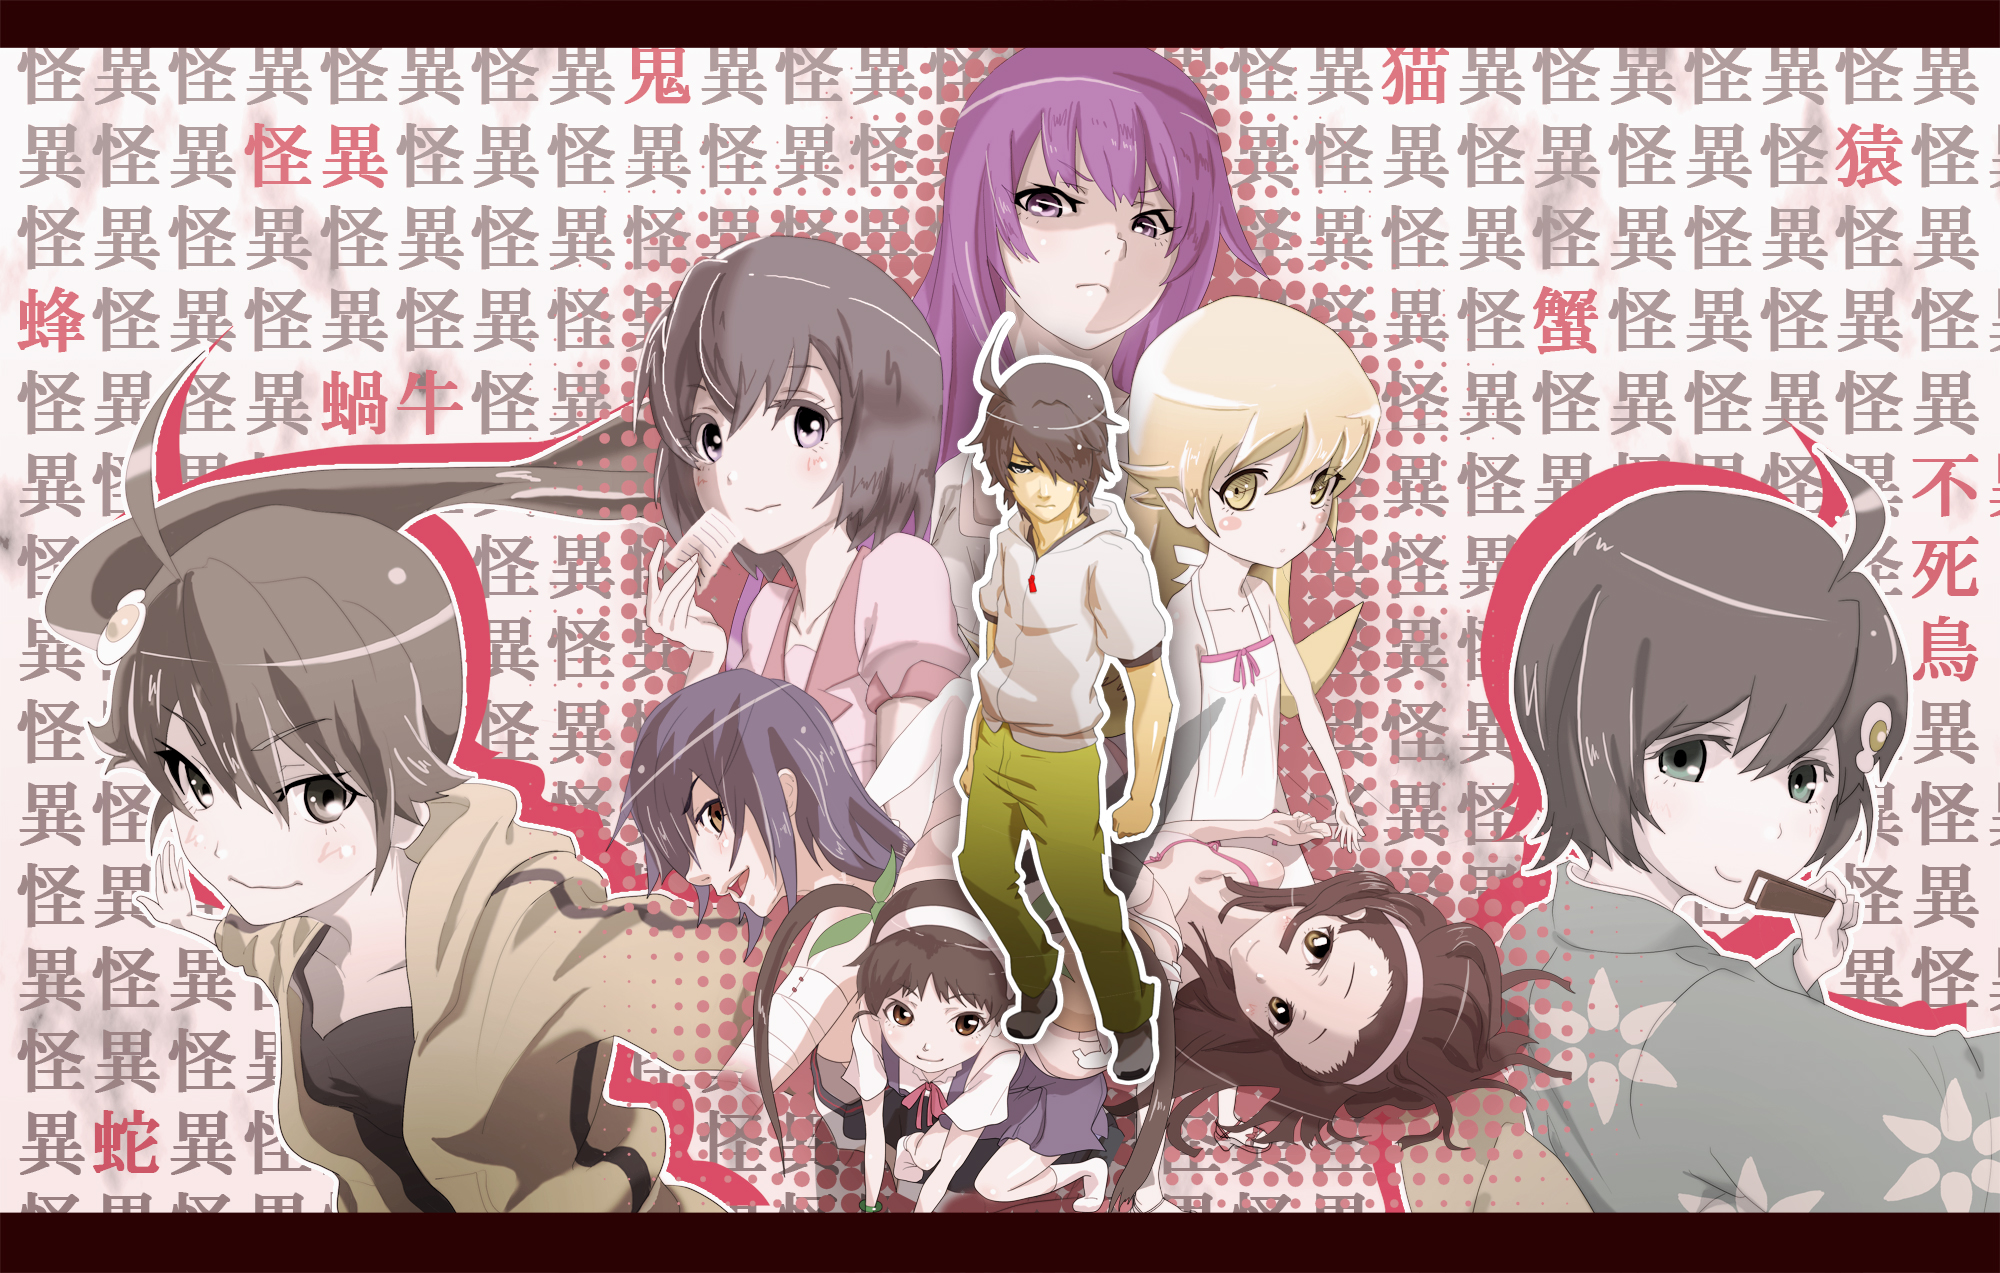 Download mobile wallpaper Anime, Monogatari (Series), Hitagi Senjōgahara, Nadeko Sengoku, Mayoi Hachikuji, Shinobu Oshino, Suruga Kanbaru, Tsubasa Hanekawa, Koyomi Araragi, Karen Araragi, Tsukihi Araragi for free.